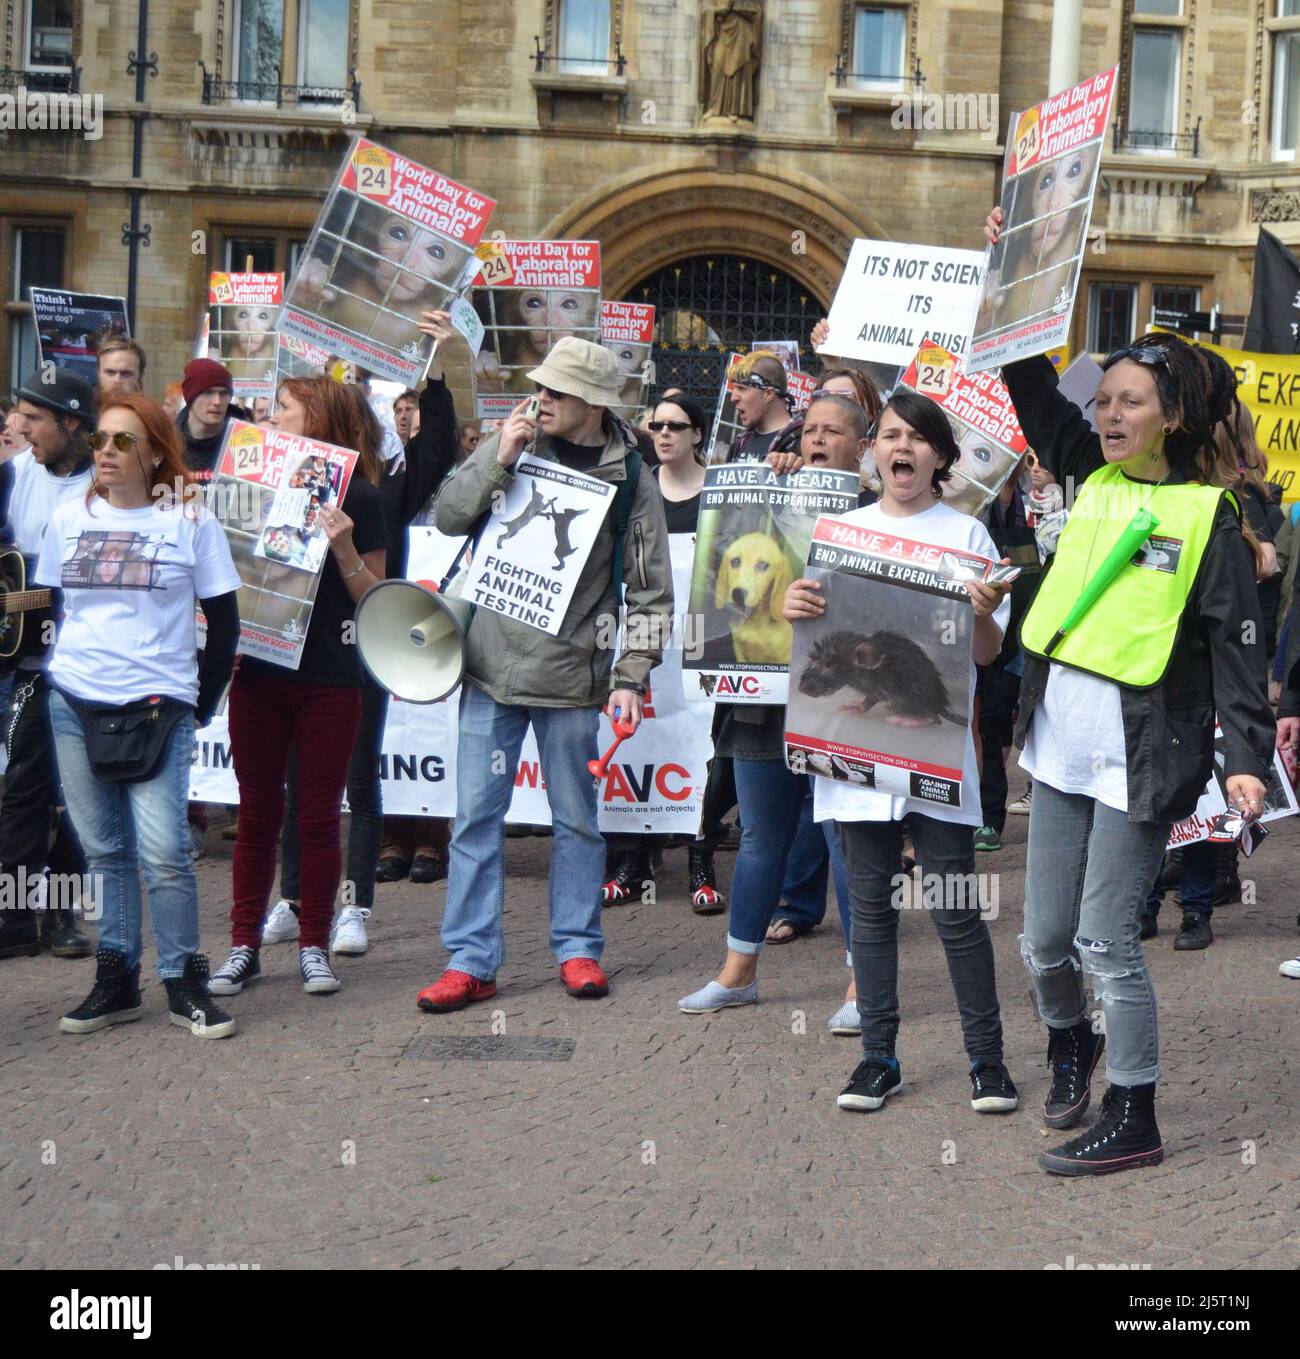 Giornata mondiale degli animali nei Laboratories, Cambridge, UK, Aprile 25th 2015 - attivisti per i diritti degli animali che protestano nei pressi dell'Università di Cambridge Foto Stock